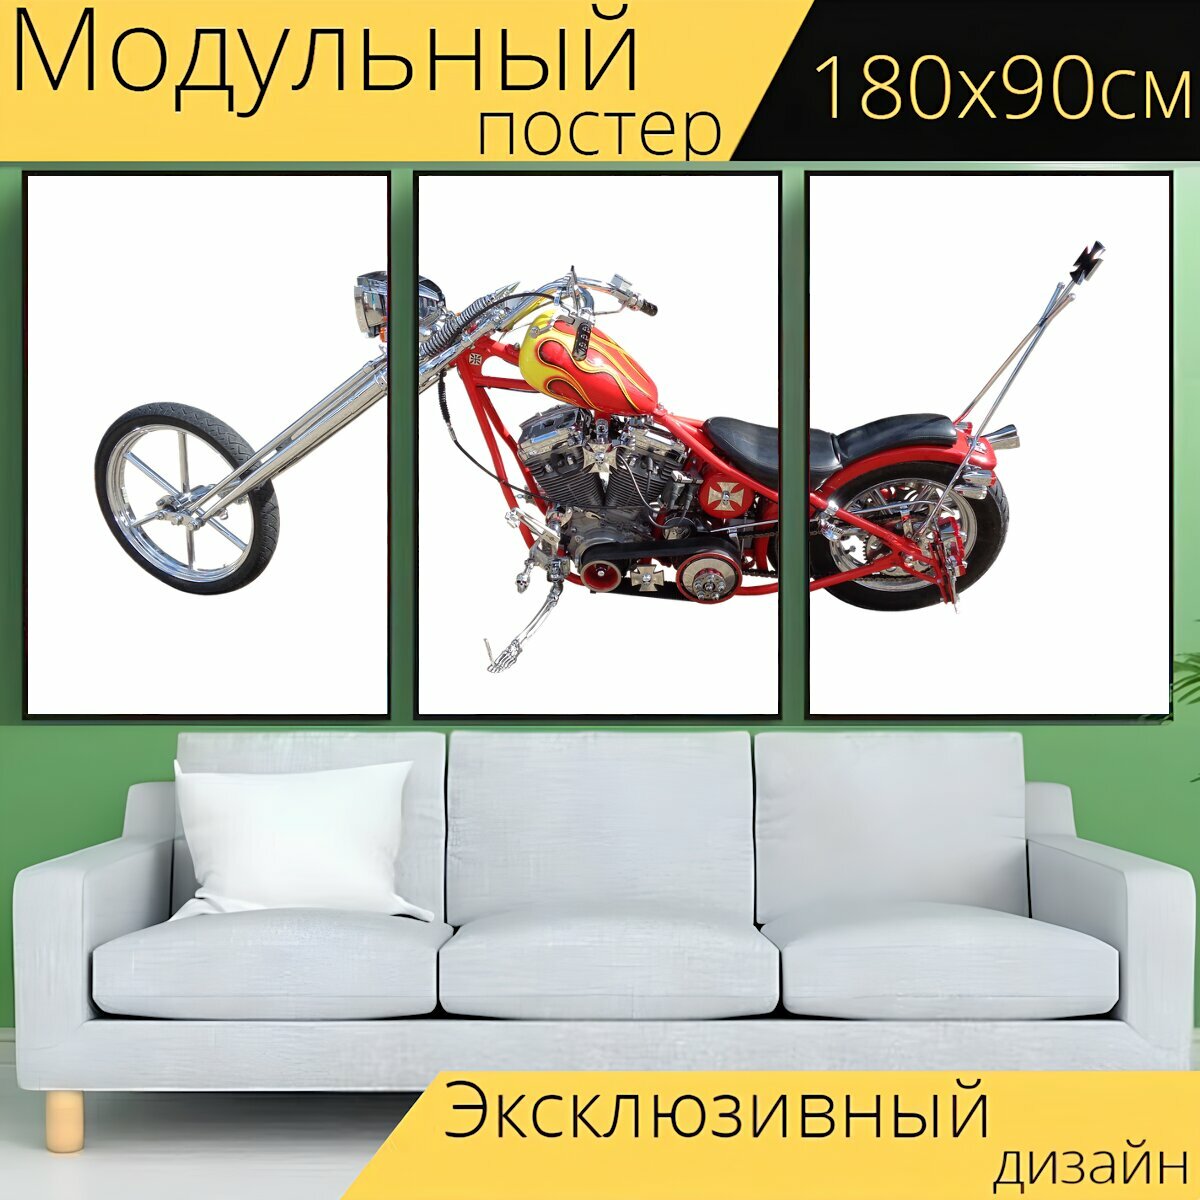 Модульный постер "Велосипед, мотоцикл, байкер" 180 x 90 см. для интерьера